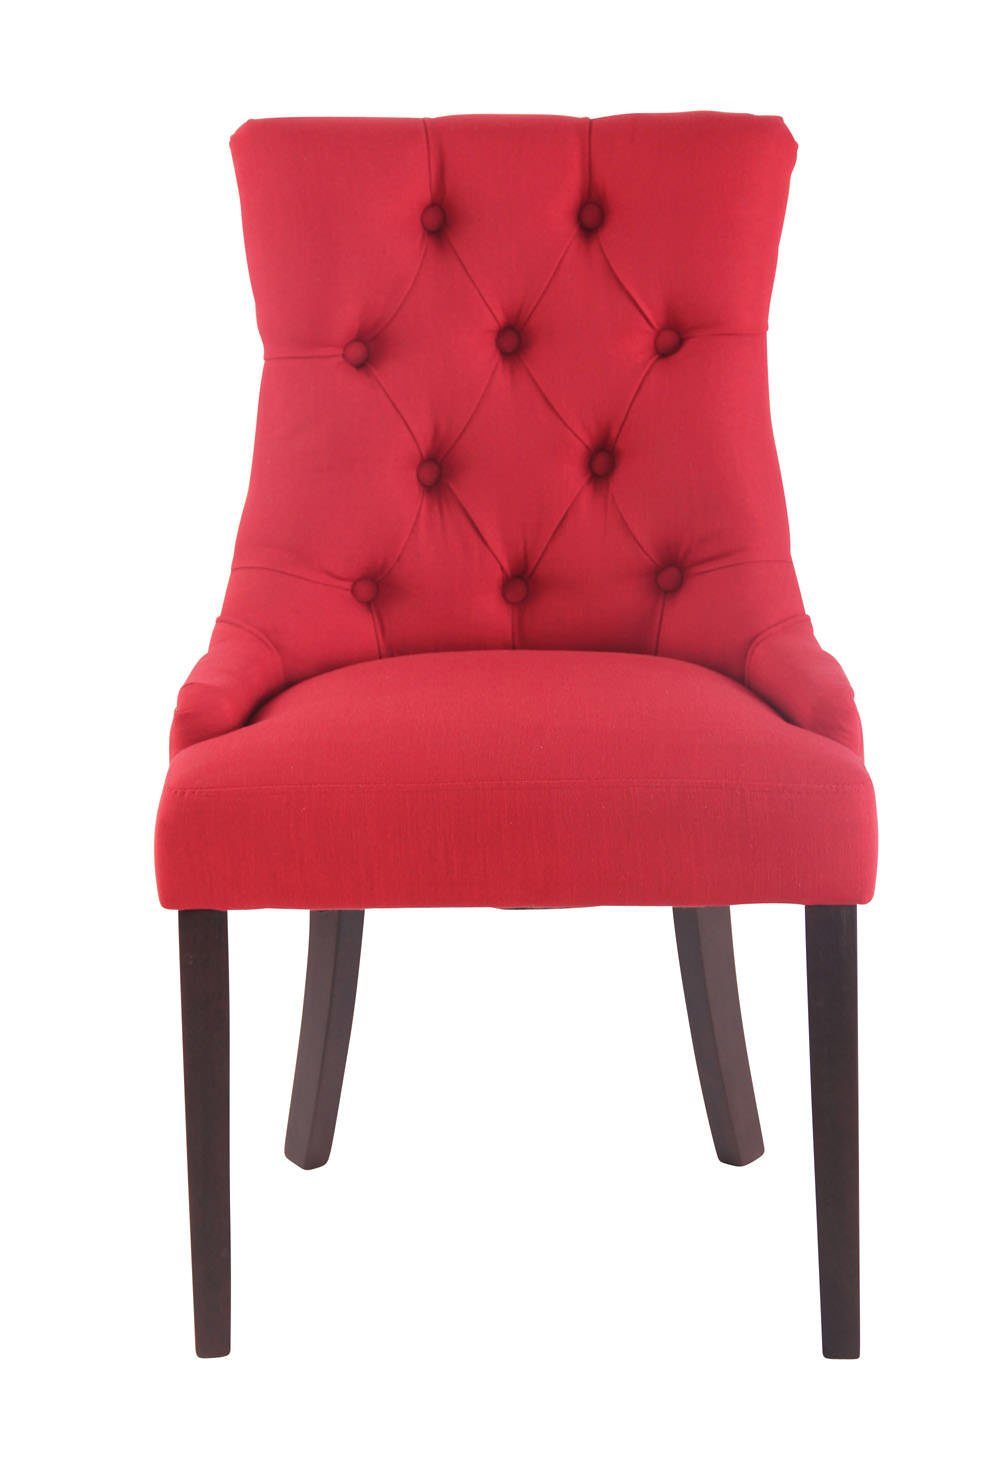 Gestell: rot TPFLiving Esszimmerstuhl Sitzfläche: hochwertig mit Aboli Wohnzimmerstuhl), antik-dunkel Konferenzstuhl - - - Stoff Kautschukholz (Küchenstuhl Sitzfläche gepolsterter